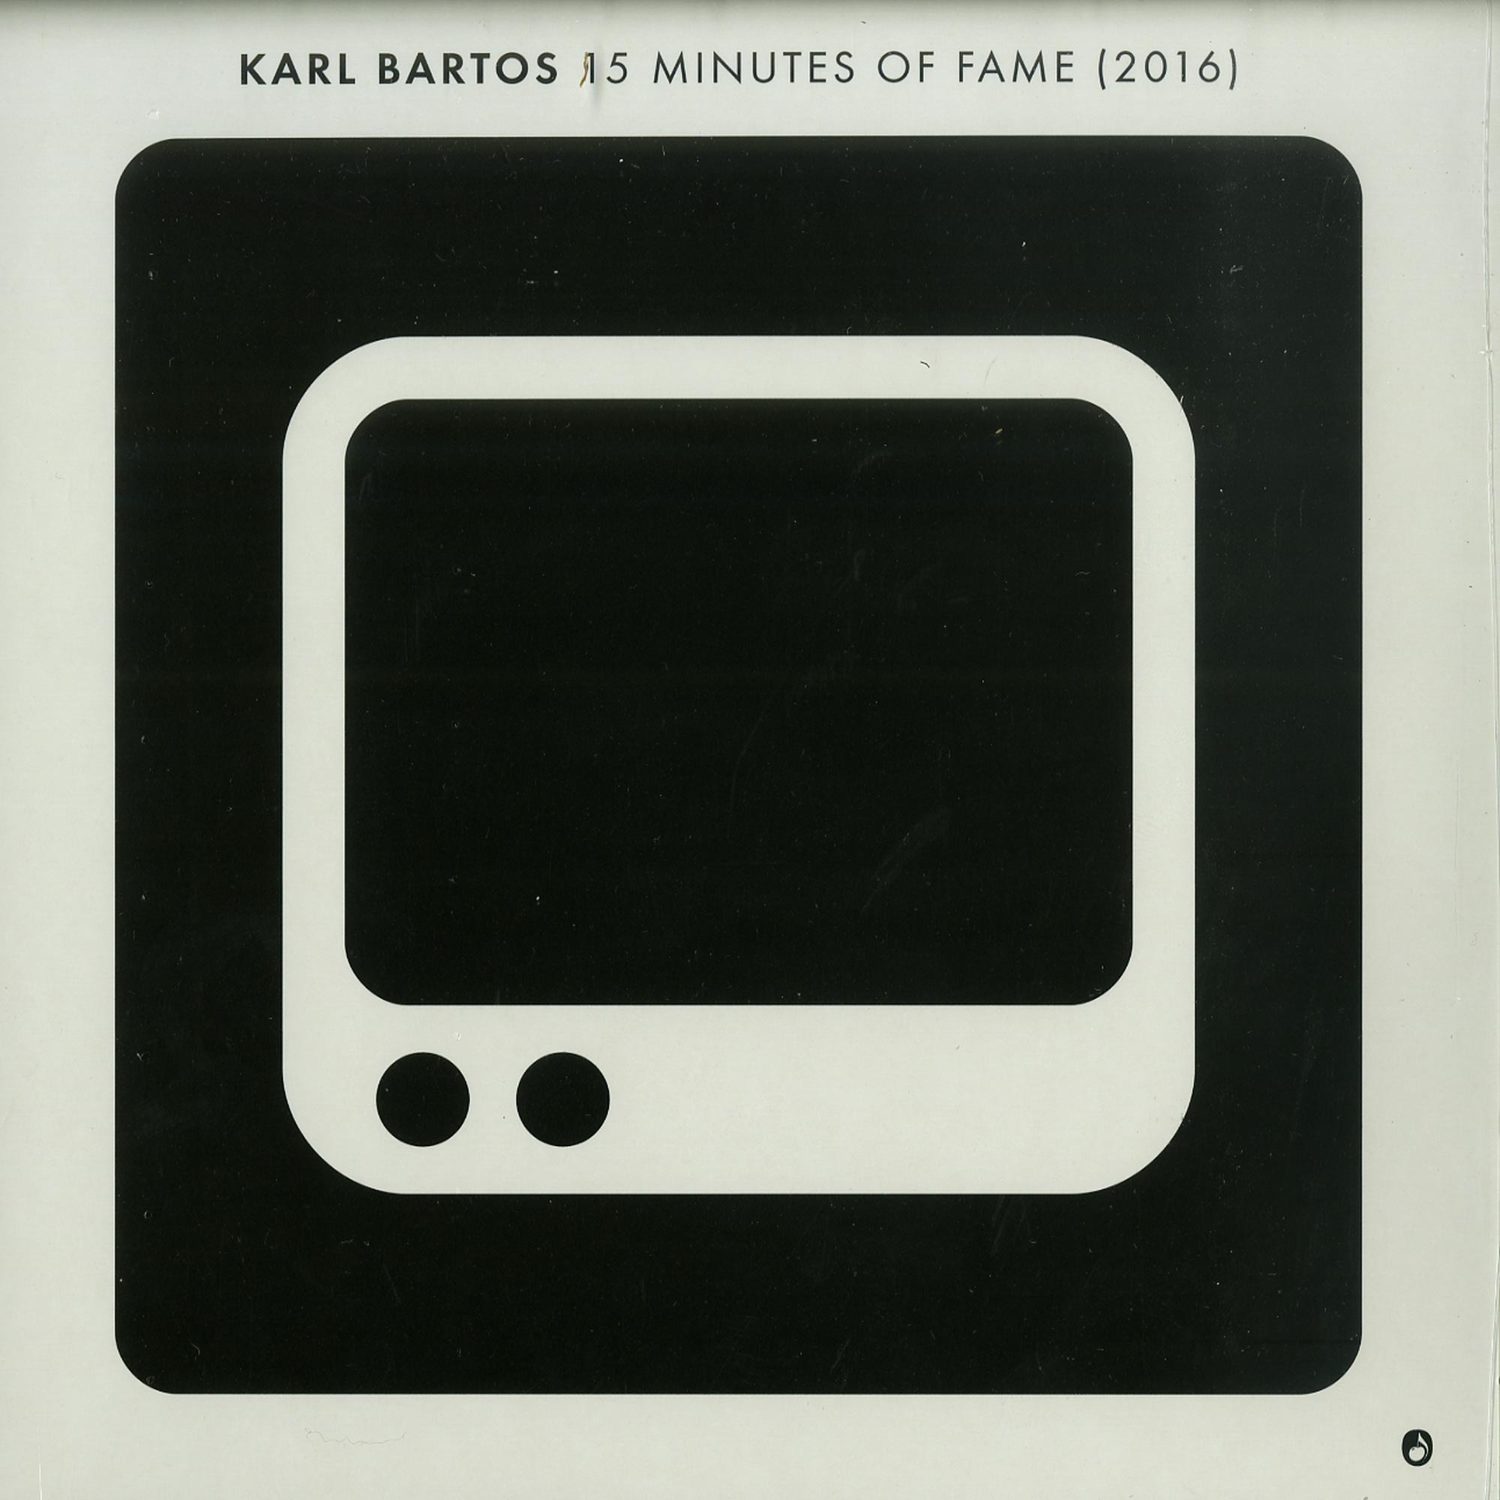 Karl Bartos - 15 MINUTES OF FAME 2016 